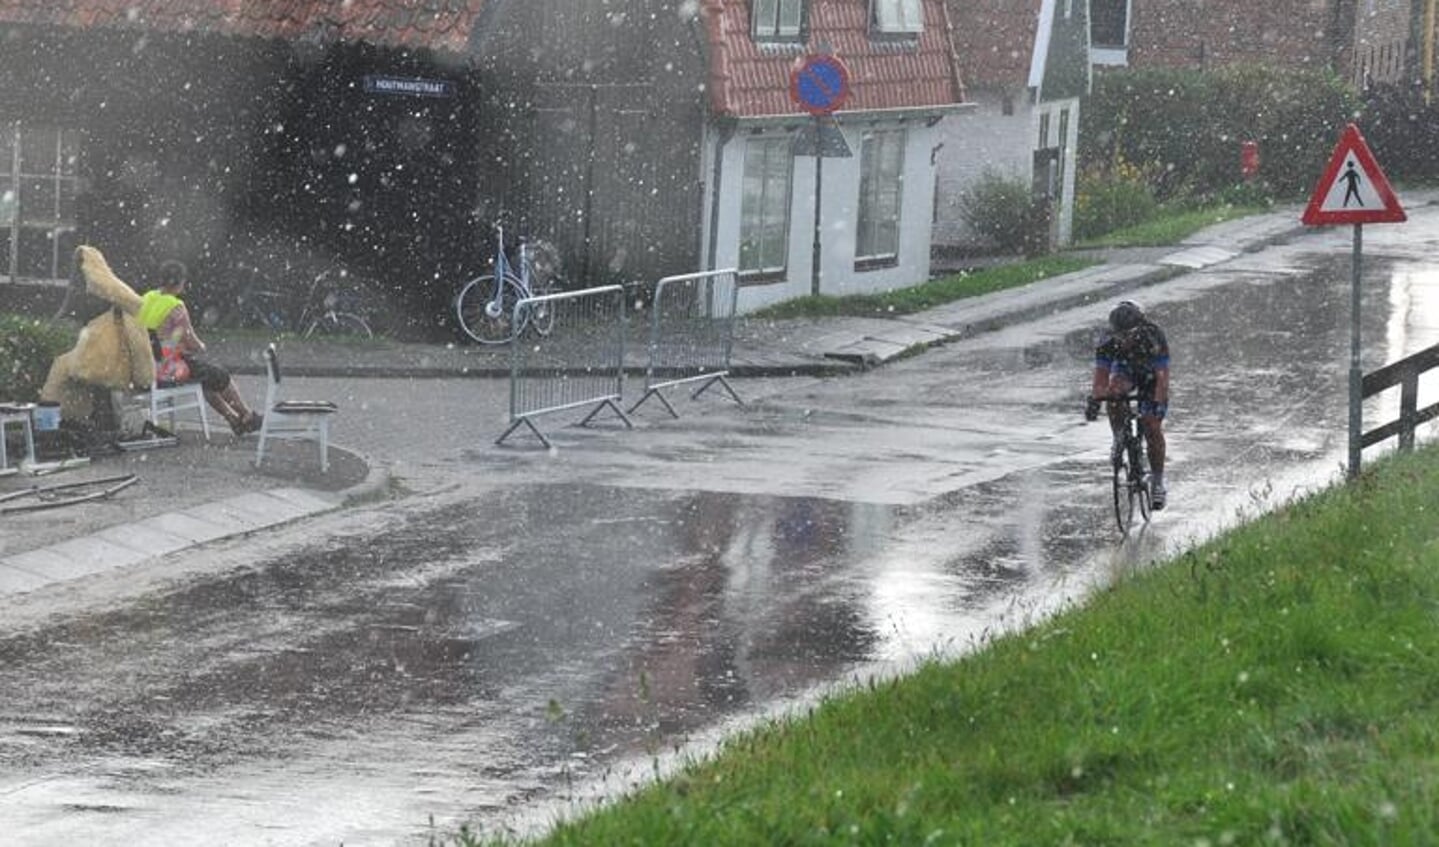 Een korte felle regenbui teisterde de renners tijdens een verder zonnige koers. (Foto: Frank Grootemaat)